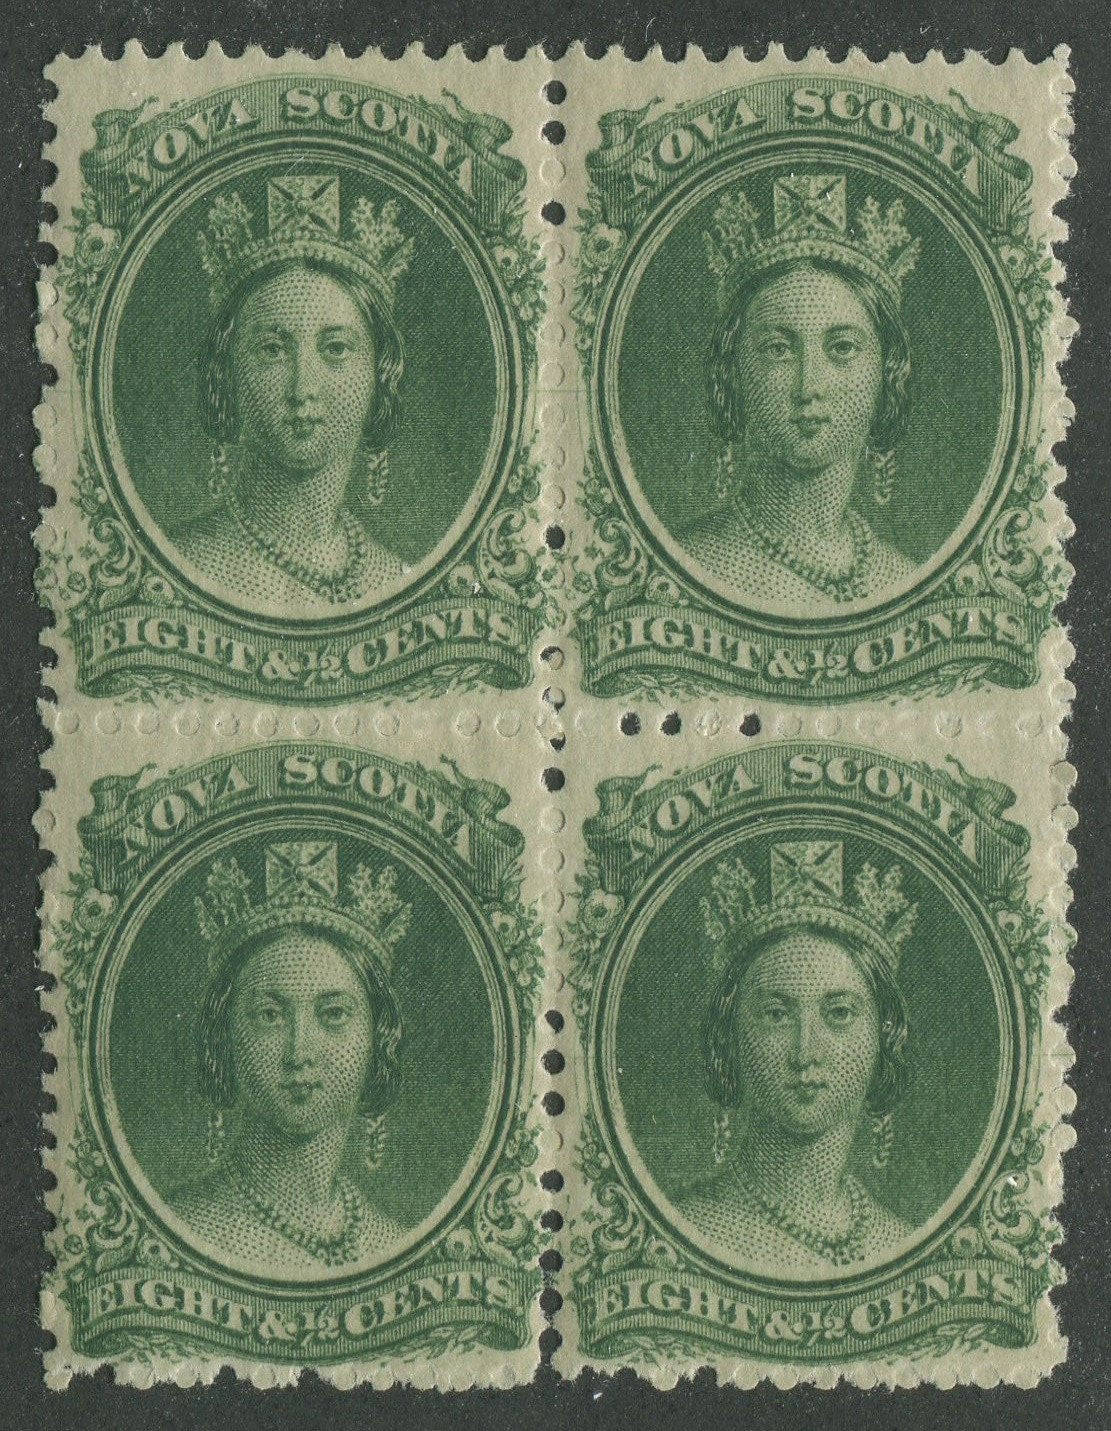 0011NS1707 - Nova Scotia #11i - Mint Block of 4 - Deveney Stamps Ltd. Canadian Stamps